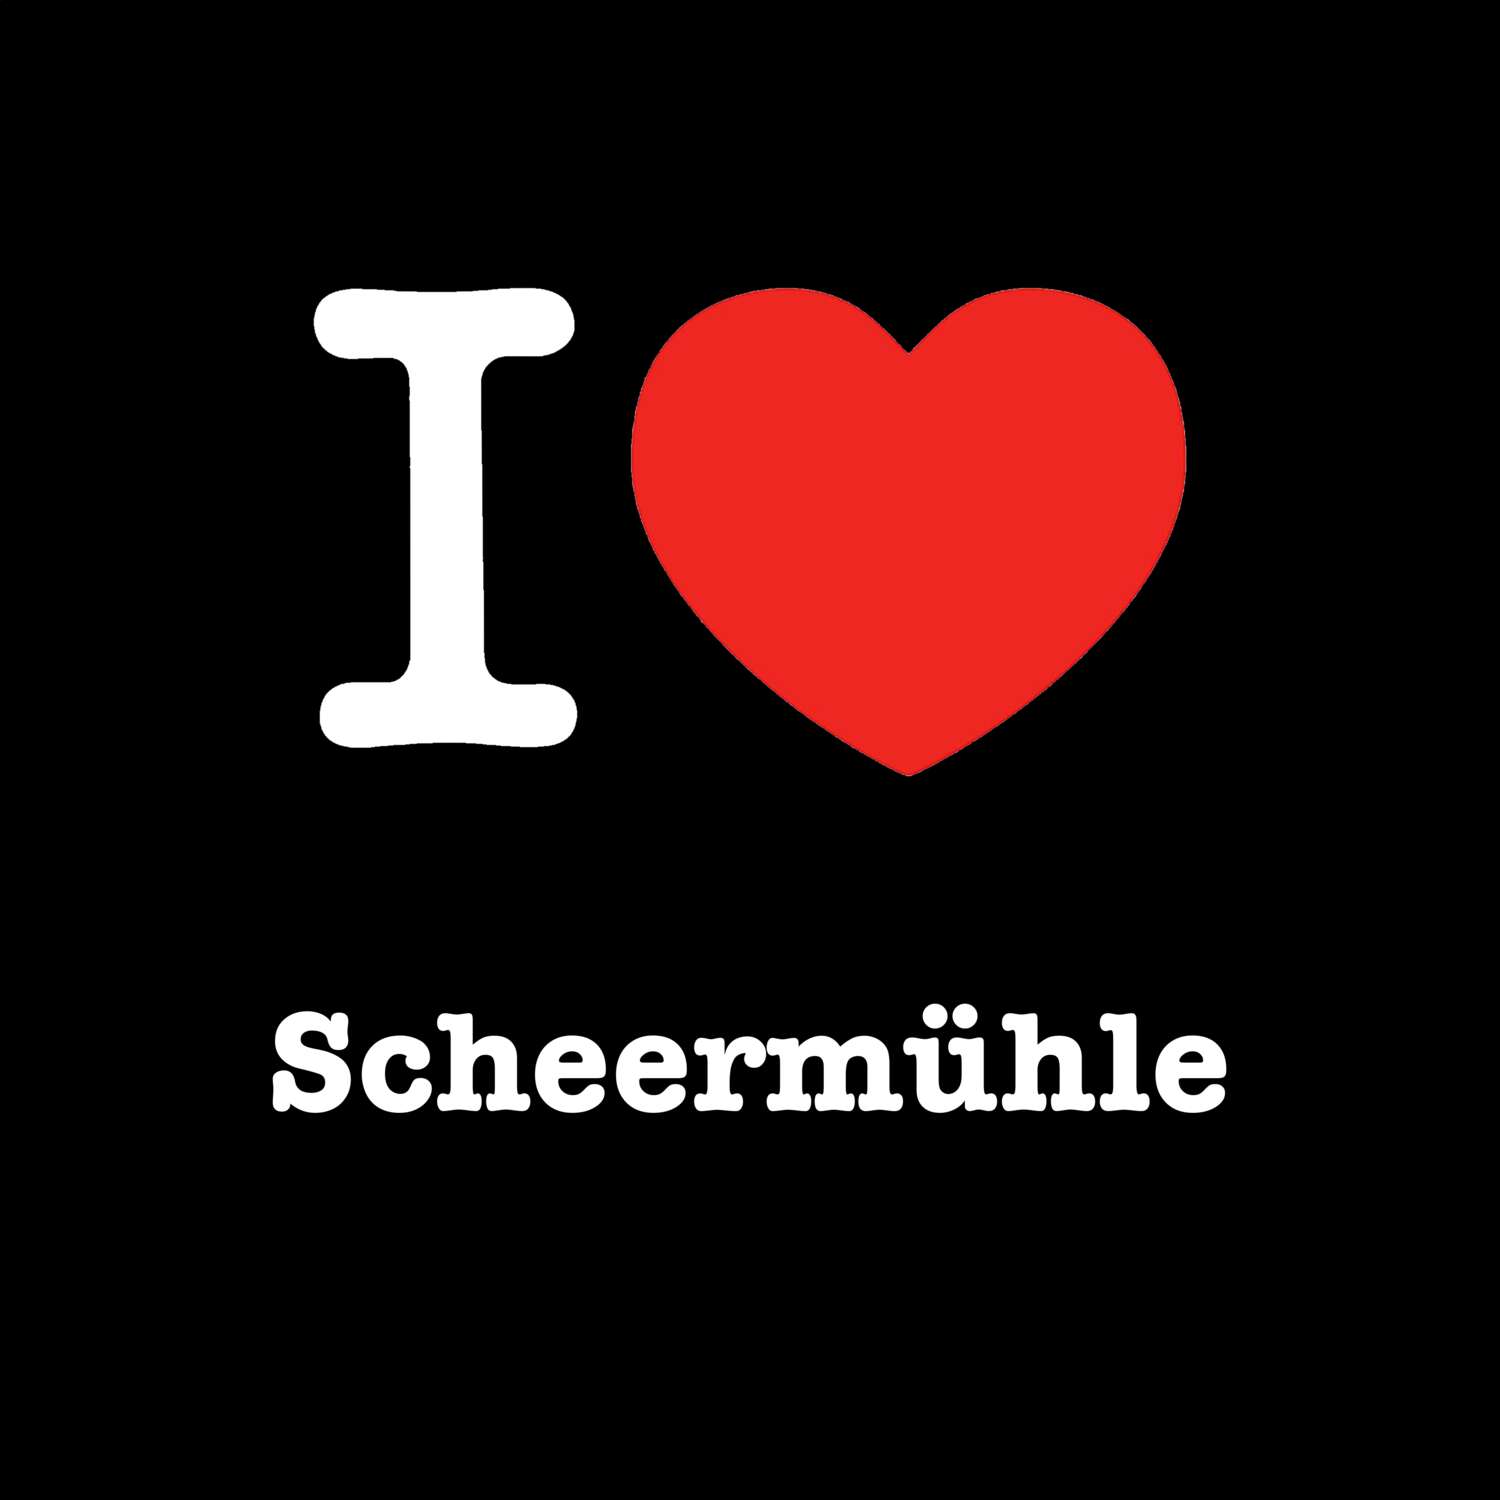 Scheermühle T-Shirt »I love«